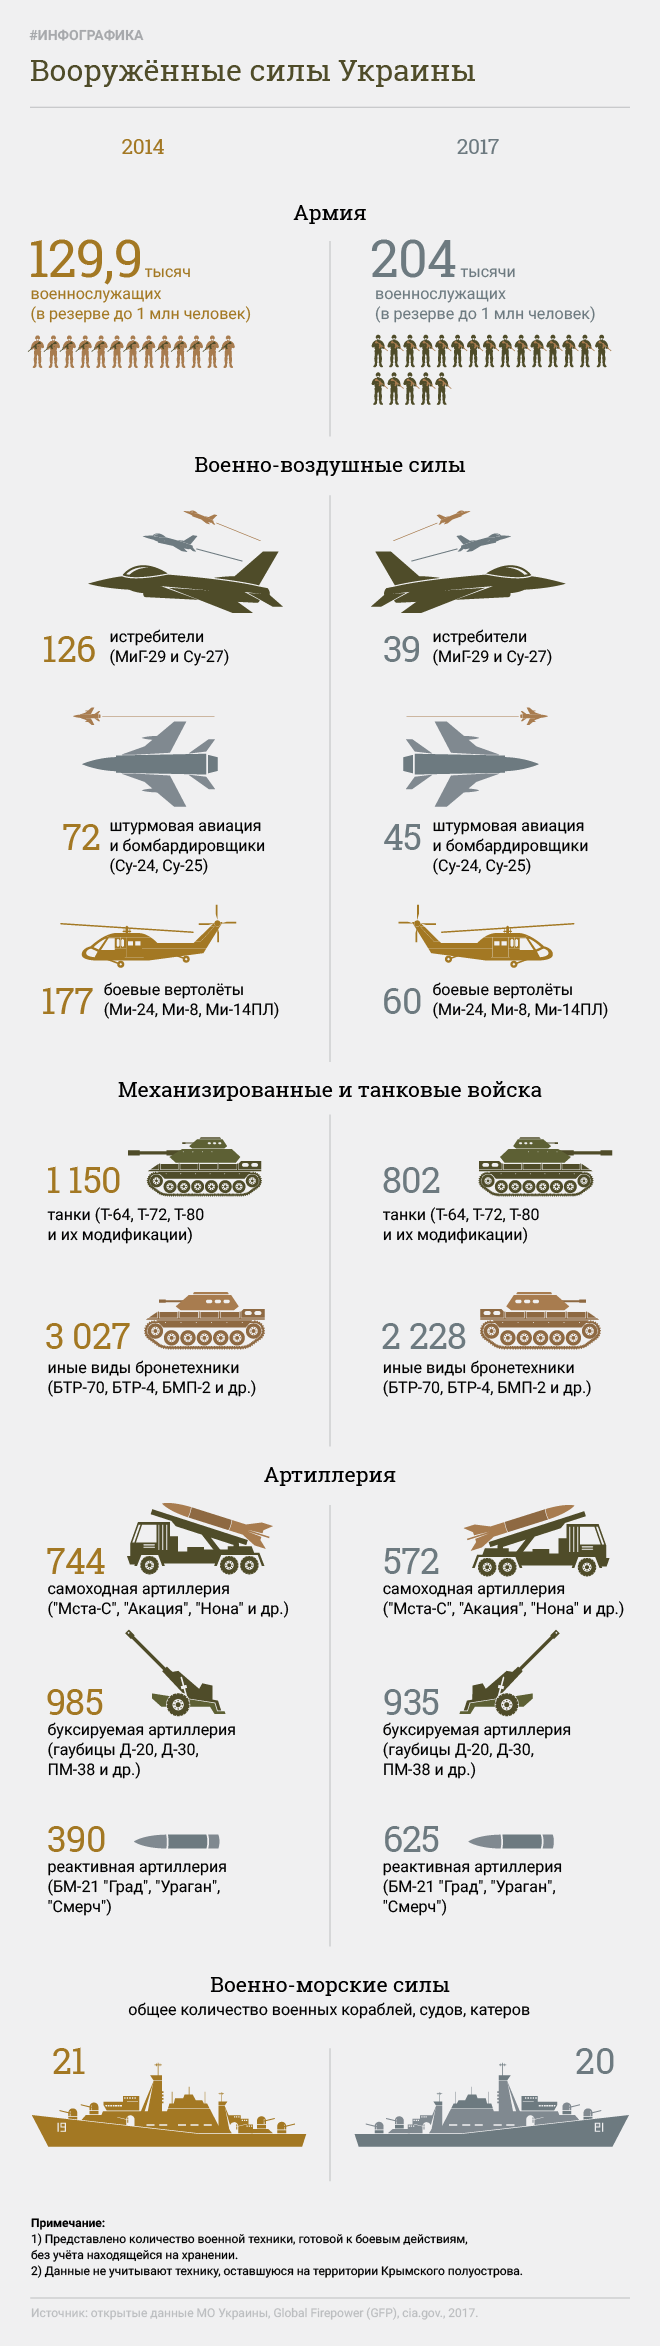 Fuerzas armadas de ucrania. Infografia